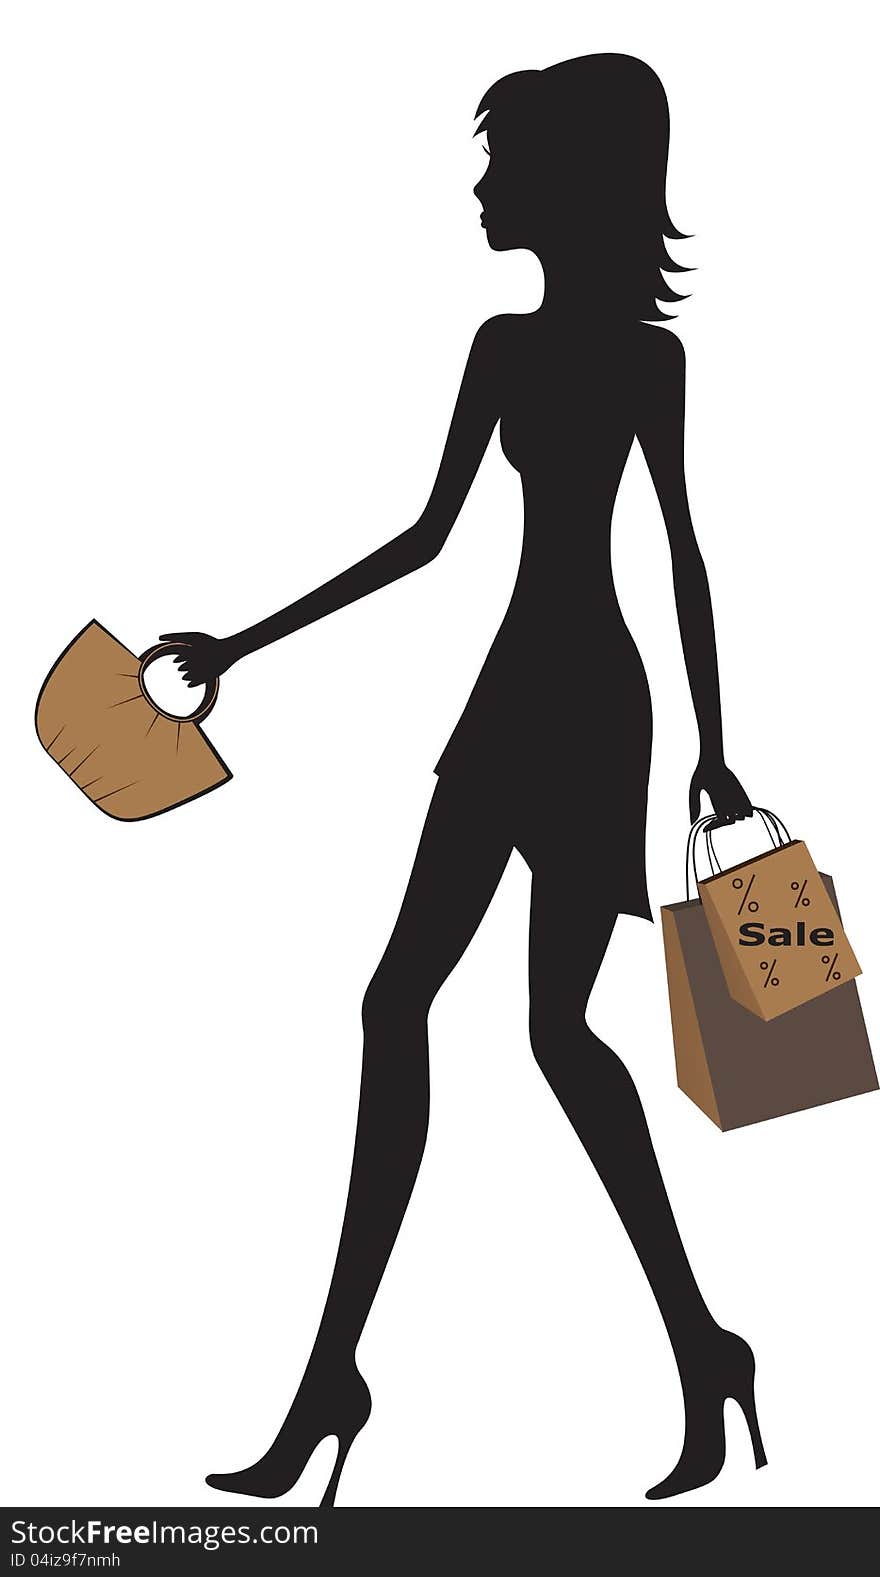 Silhouette of fashionable women shopping. Silhouette of fashionable women shopping.